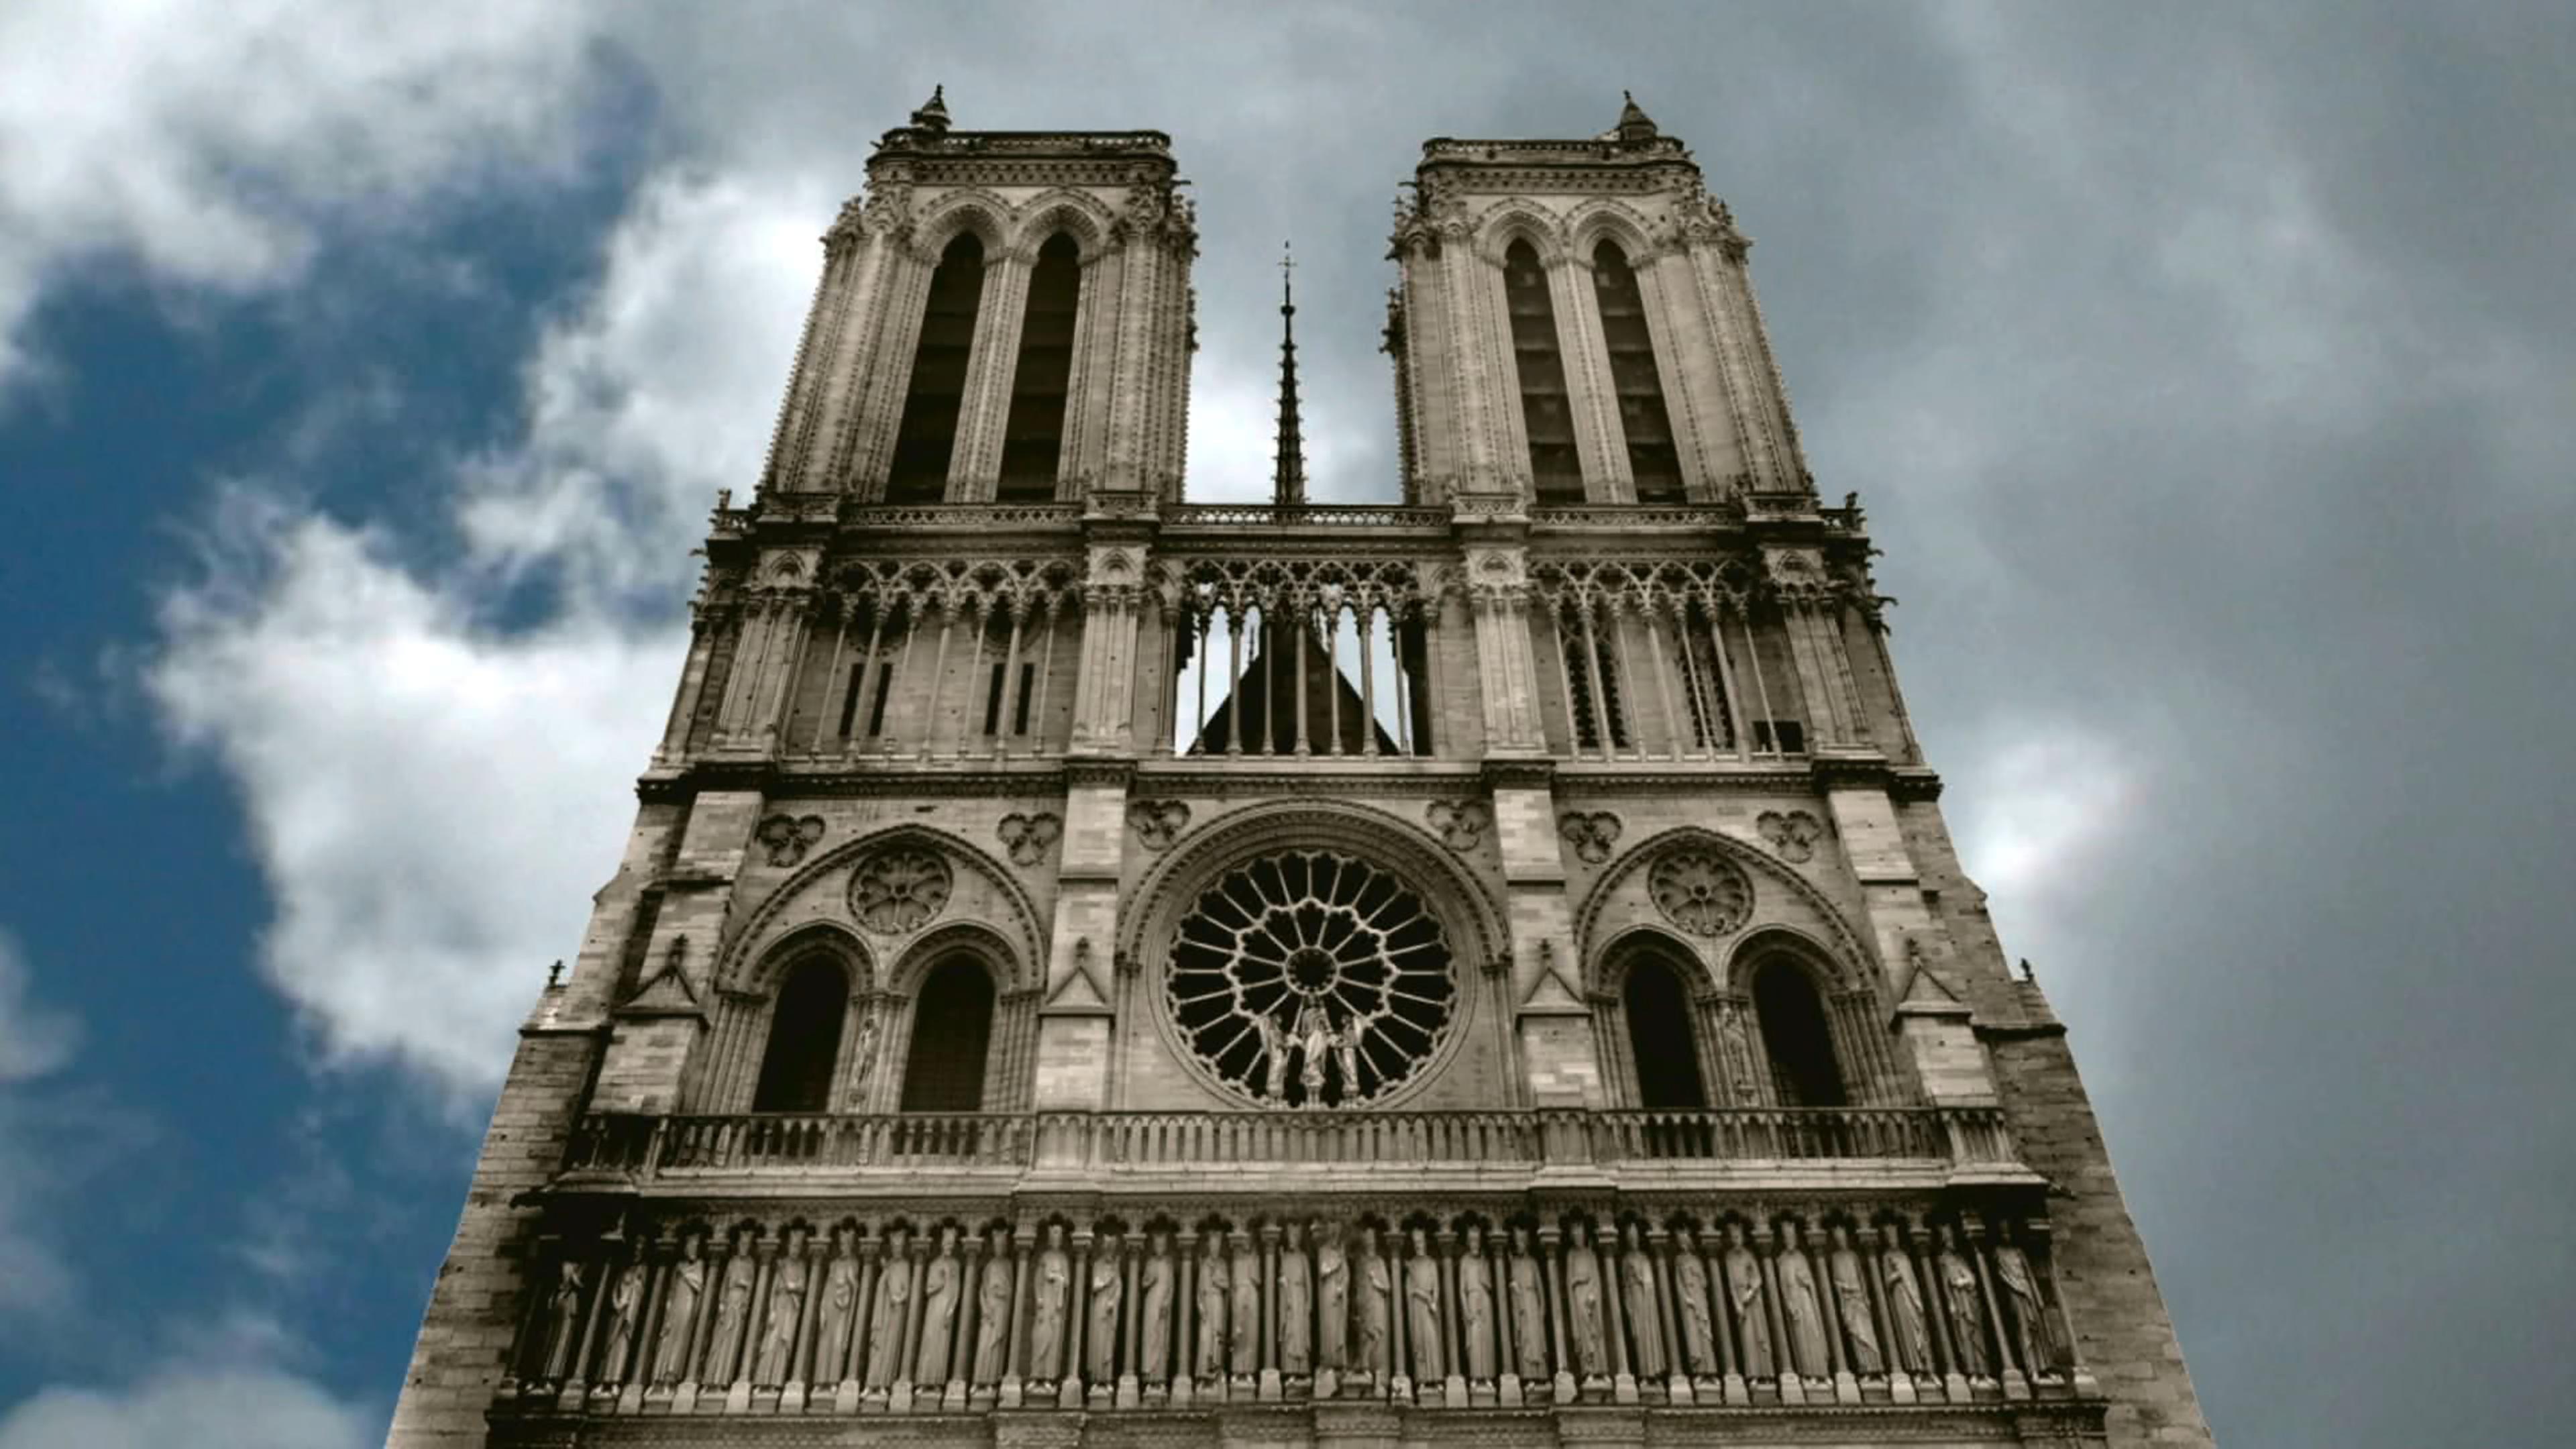 Froschperspektive auf die Front der Kathedrale von Notre-Dame, dahinter stark bewölkter Himmel.